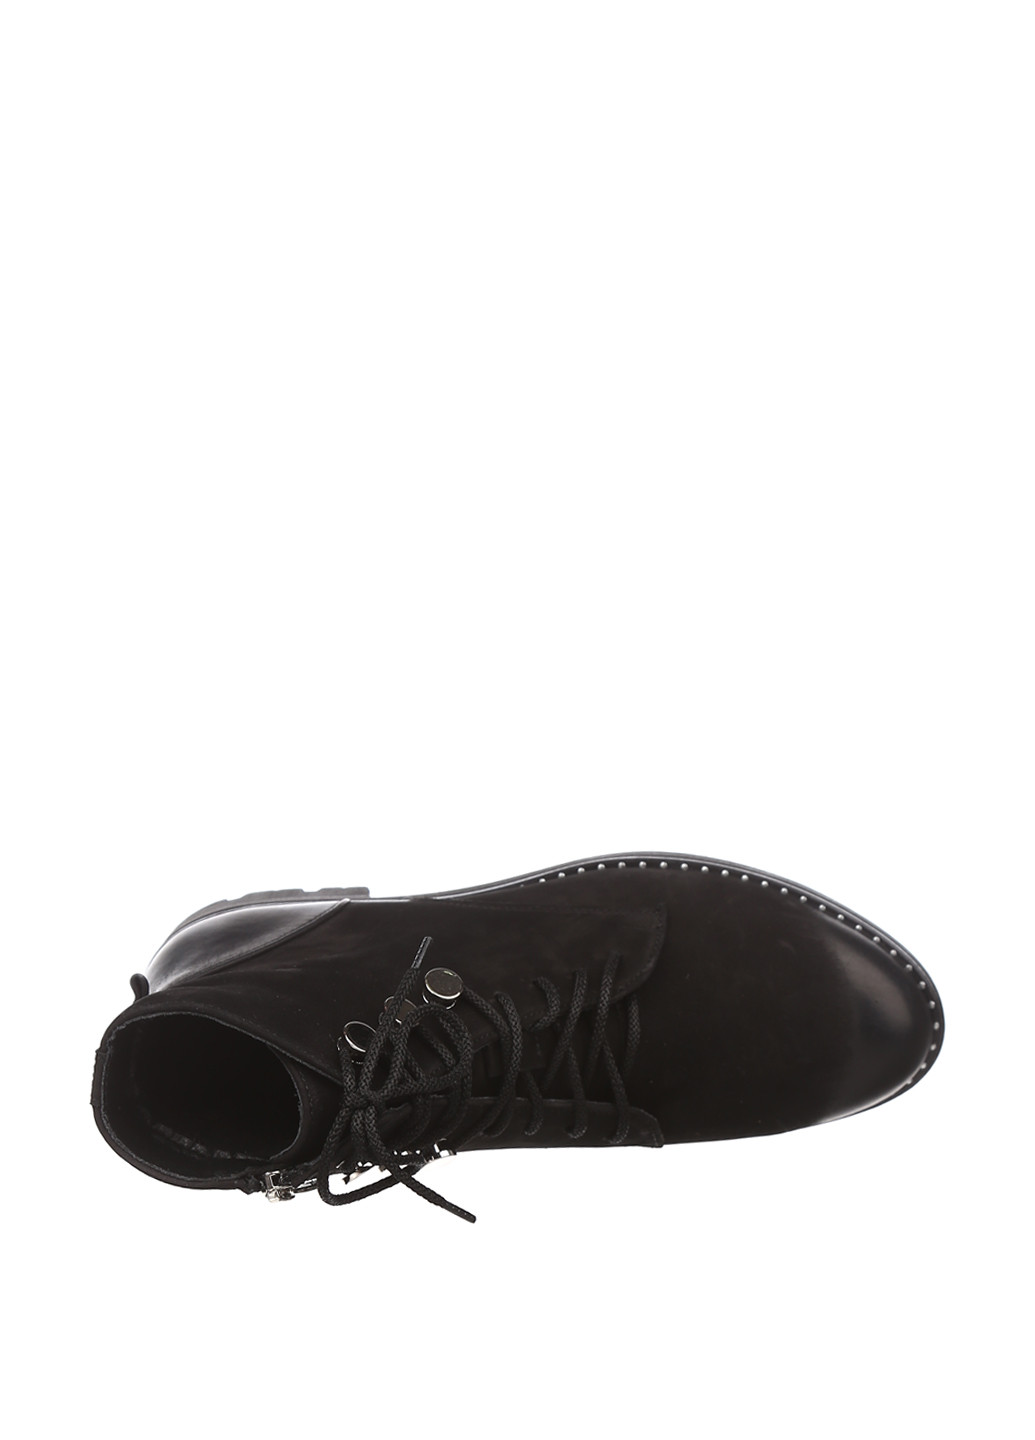 Осенние ботинки берцы Maria Tucci со шнуровкой из натурального нубука